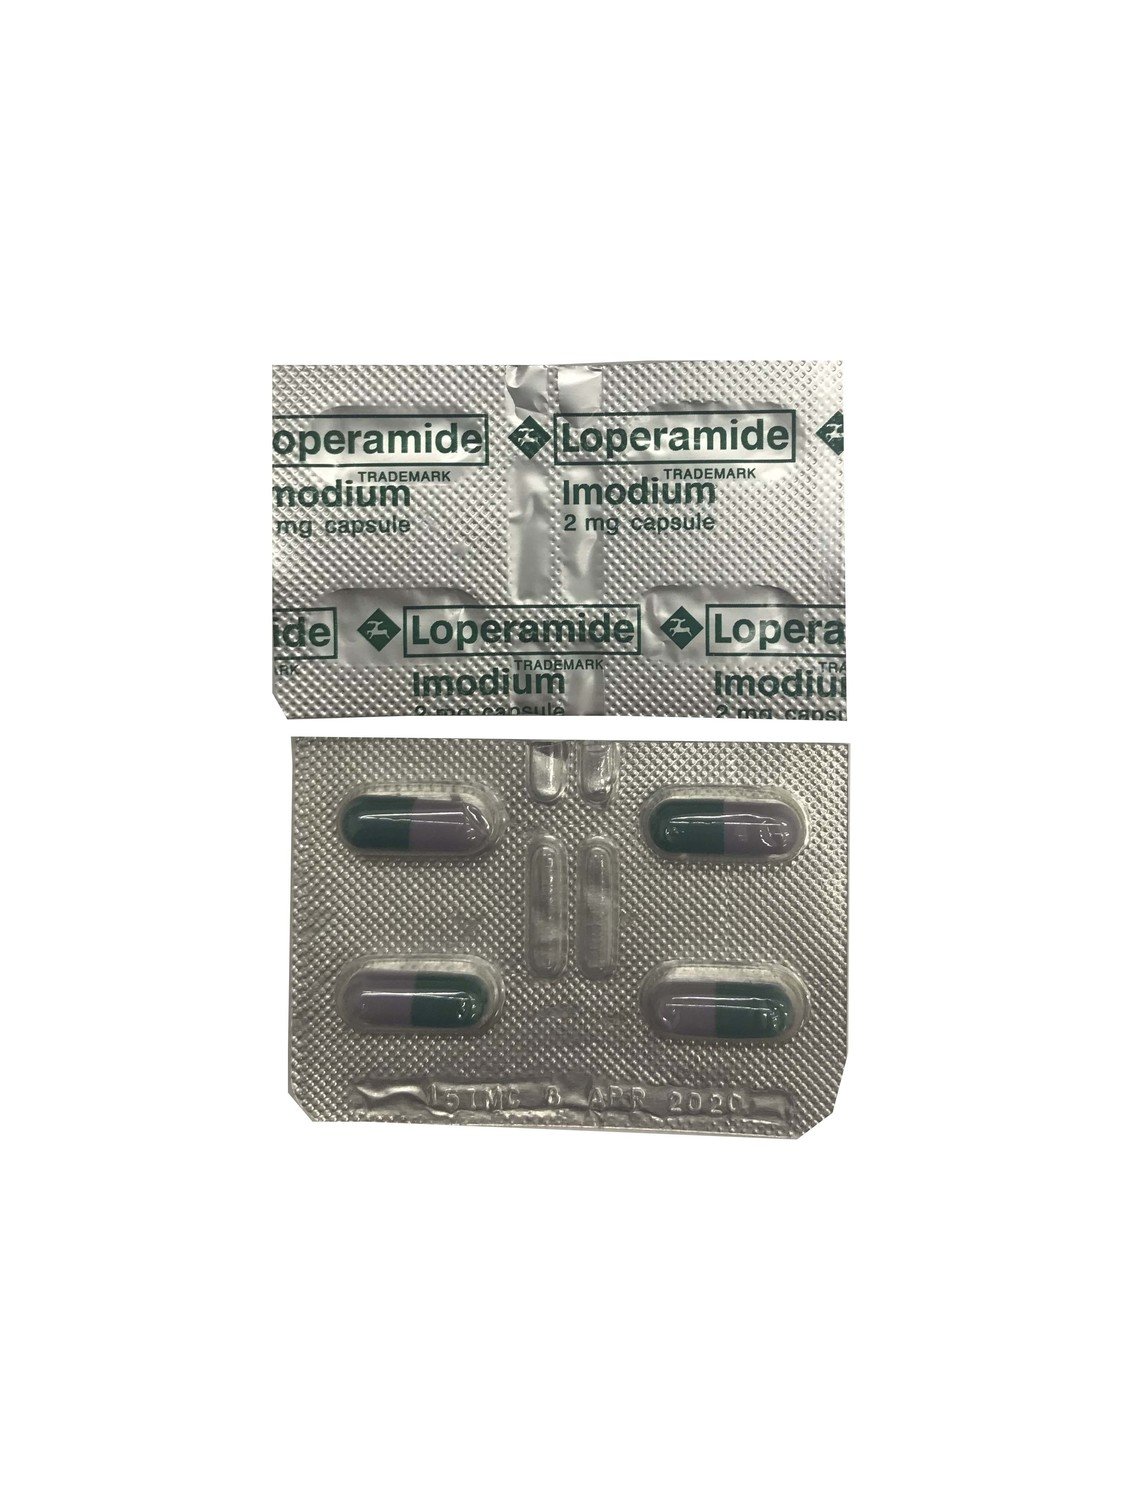 Loperamide Imodium 2 mg per capsule